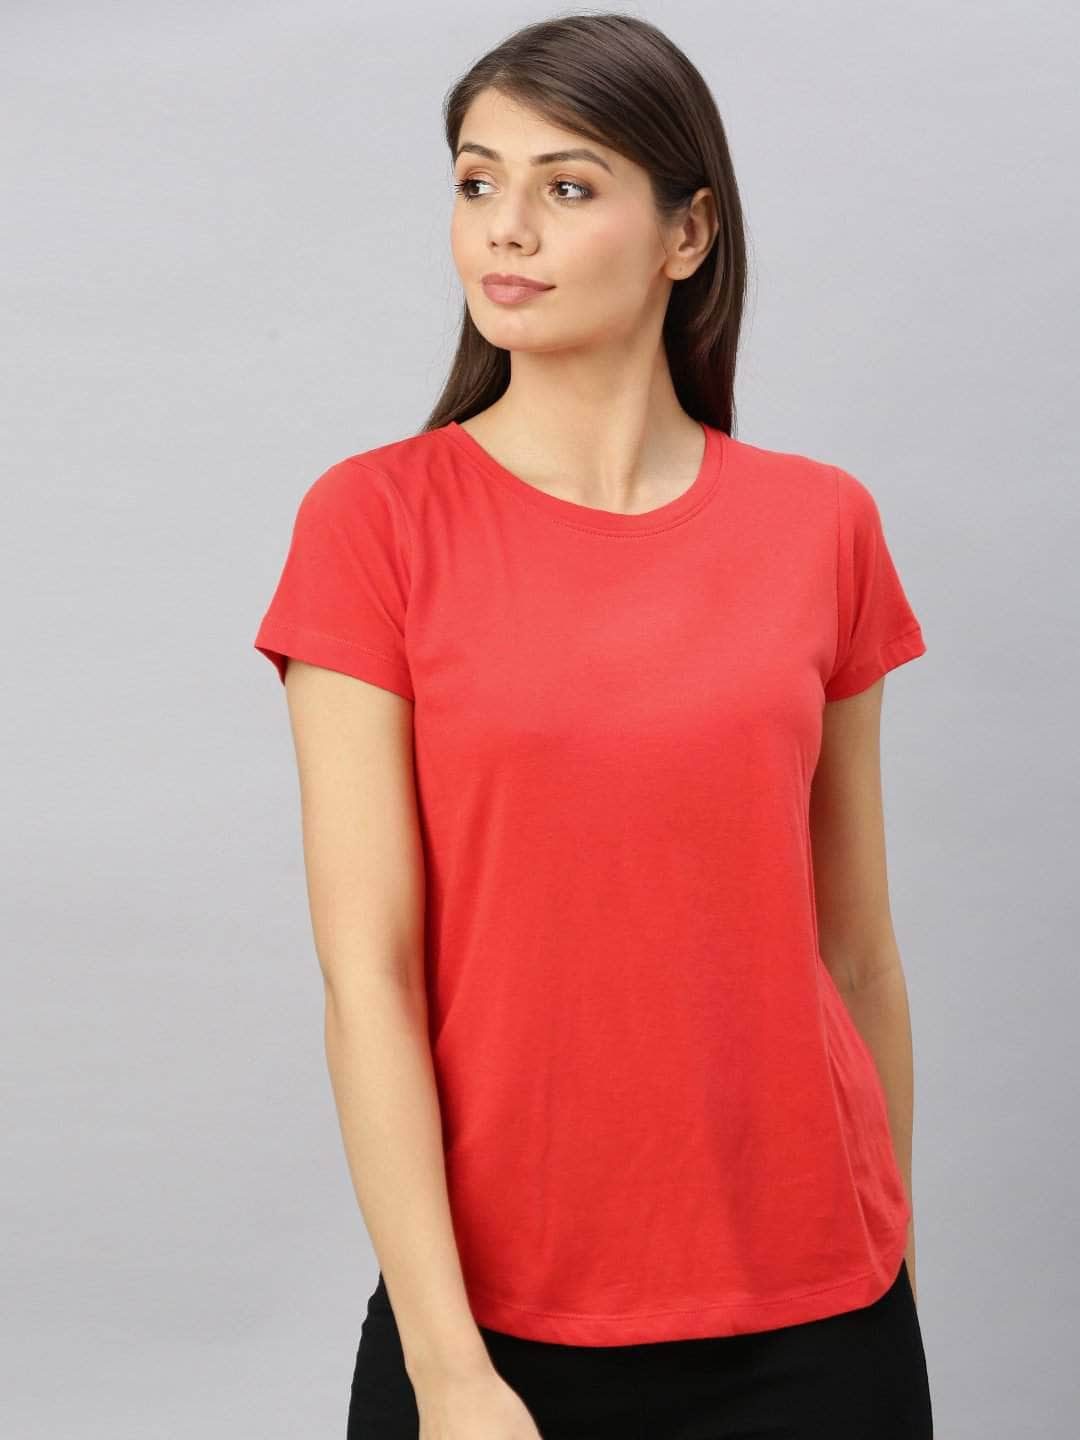 red women tshirt